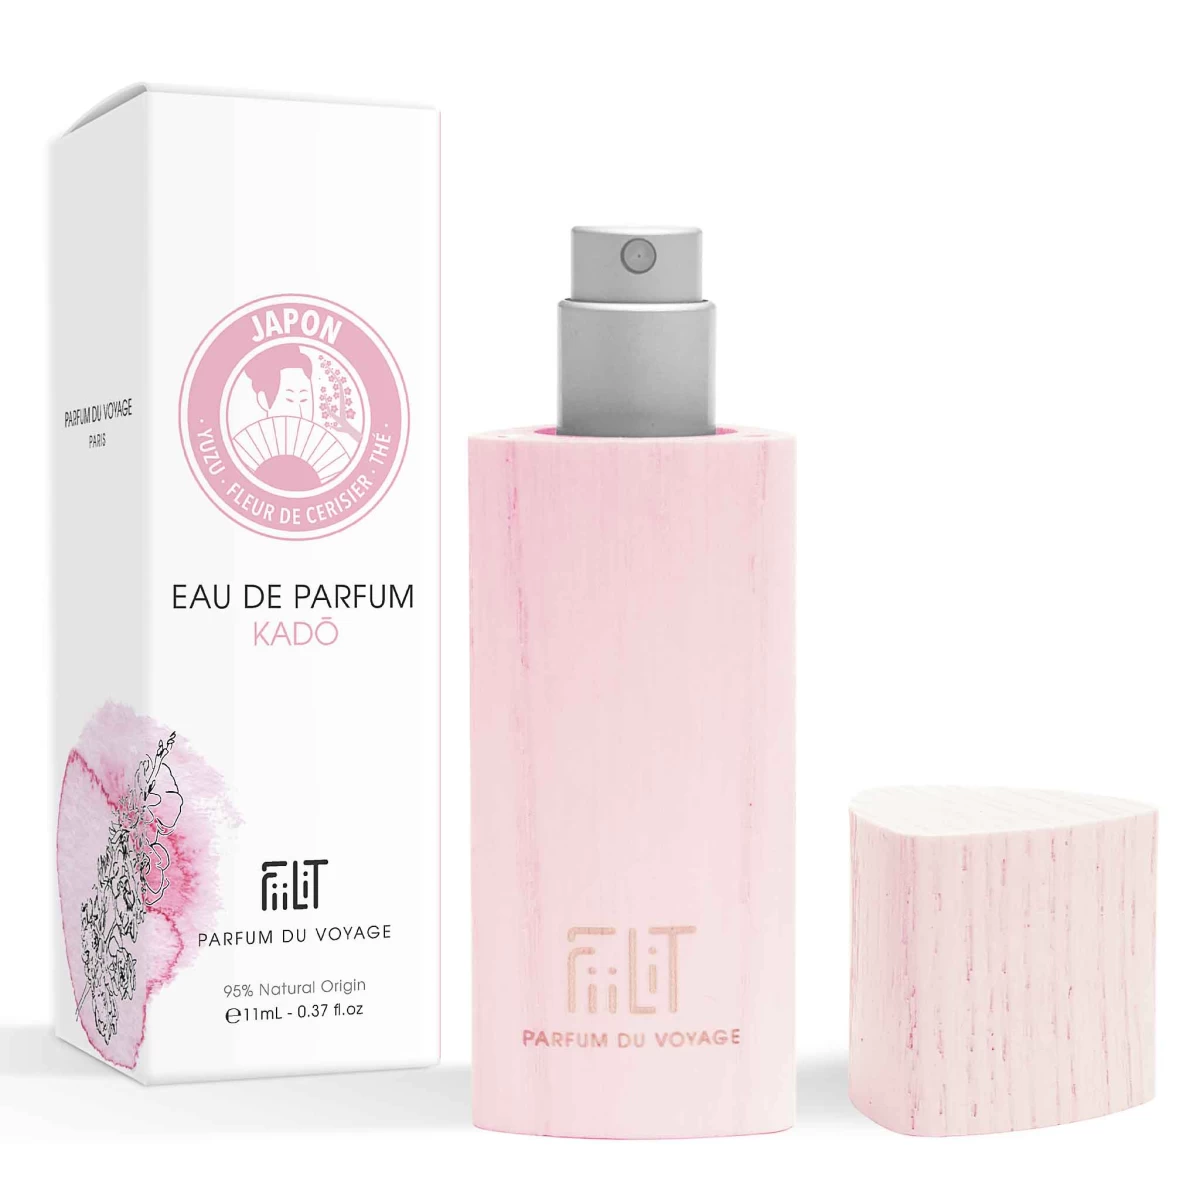 detailed_9_eau-de-parfum-11ml-bois-kado-japon-fiilit-parfum-du-voyage-naturel.webp